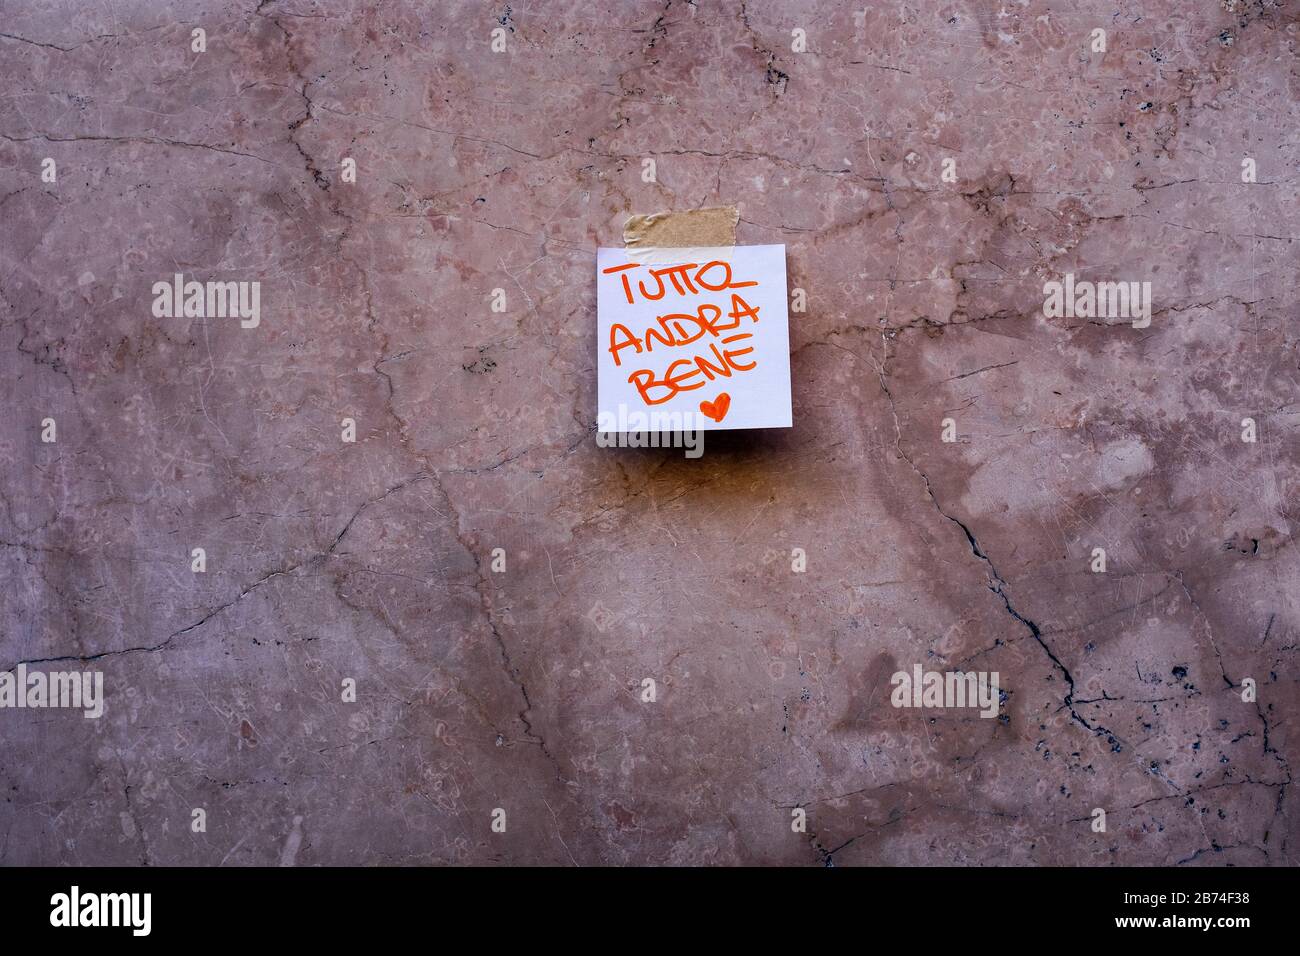 Les mains anonymes laissent des messages d'encouragement et d'espoir sur les murs: "Tout va bien", de la Lombardie dans toute la péninsule italienne. Banque D'Images